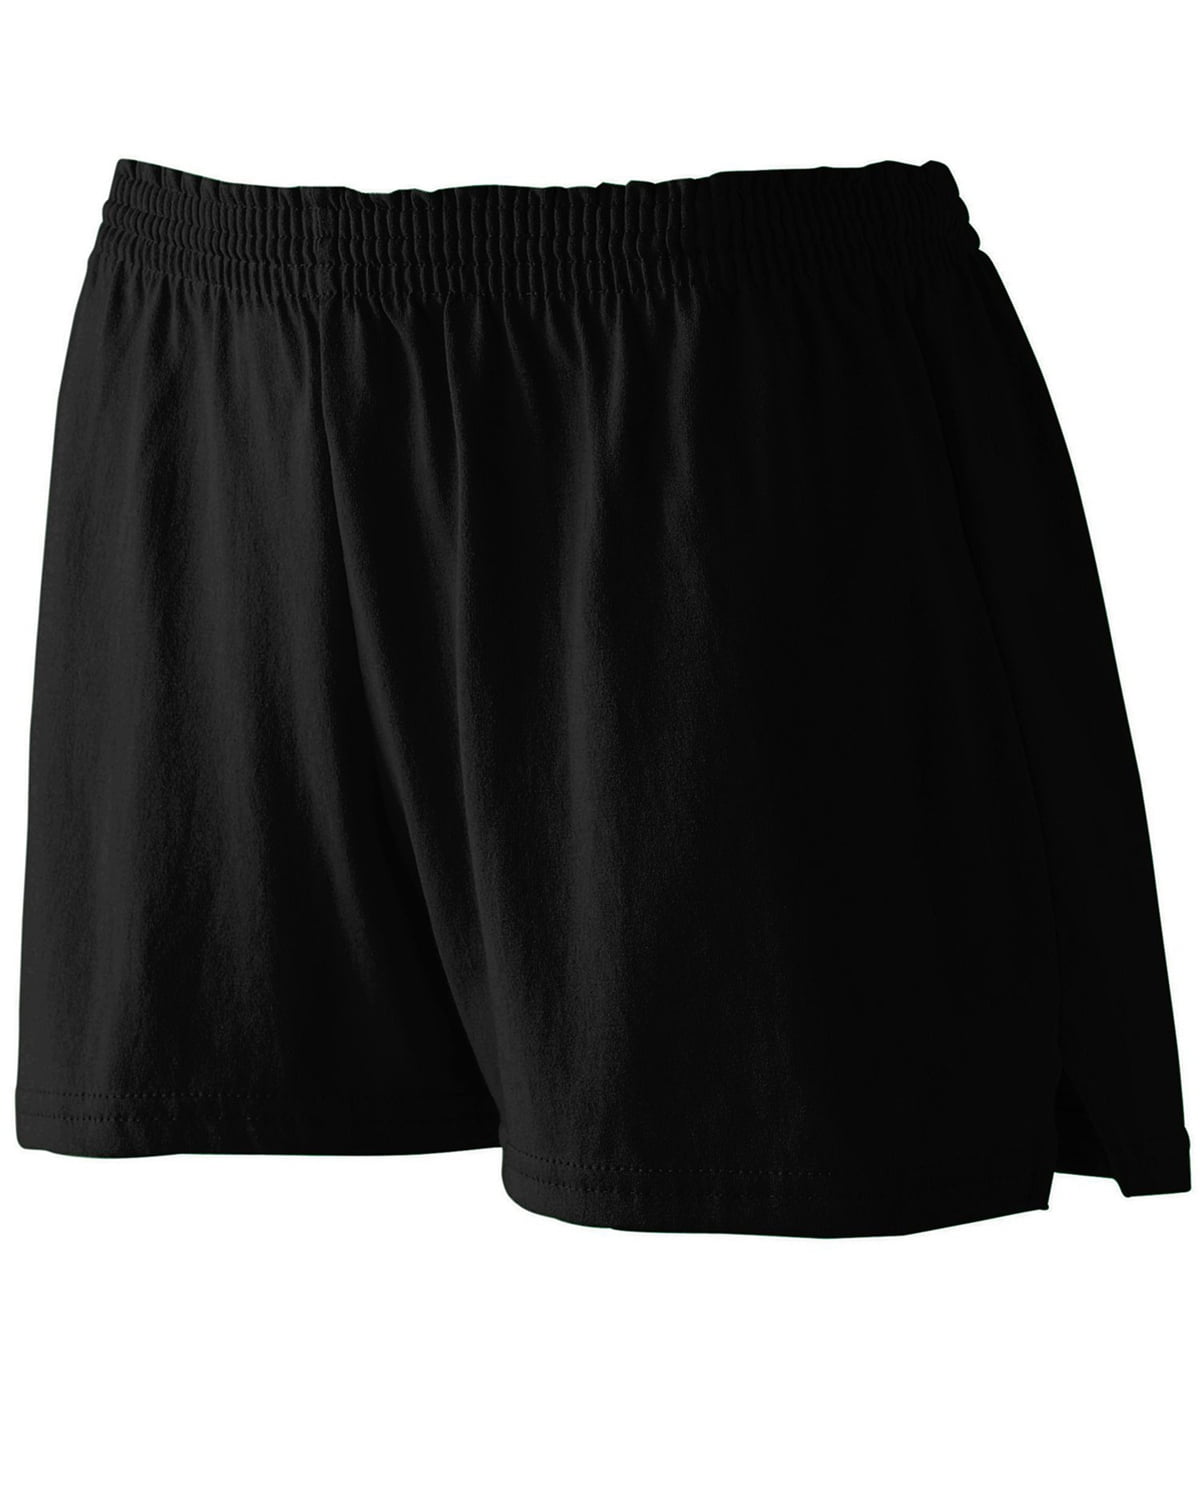 Augusta Sportswear 987 Women's Trim Fit Jersey Short